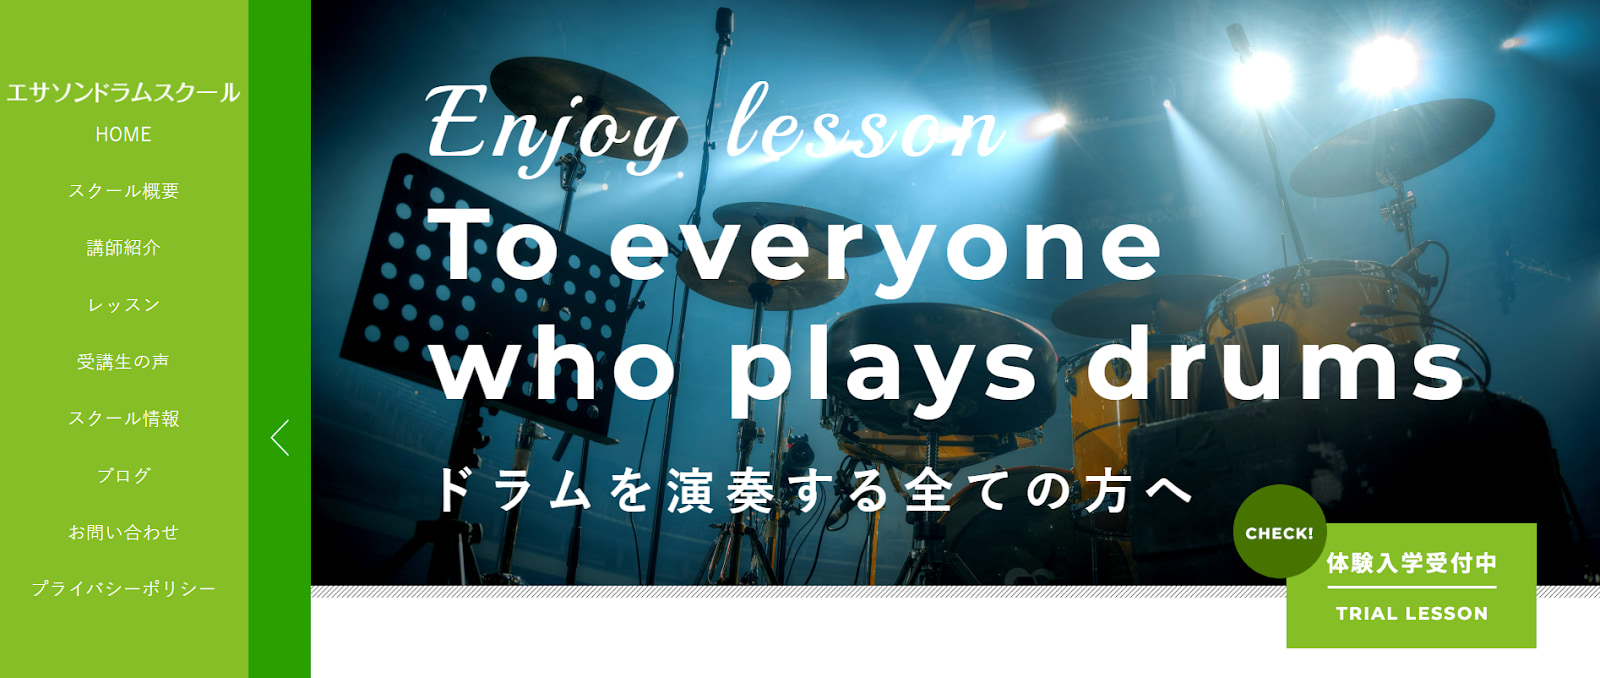 〈第3位〉【エサソンドラムスクール】入会金や年会費がないから気軽にいつでもドラムレッスンが受けられる渋谷の教室